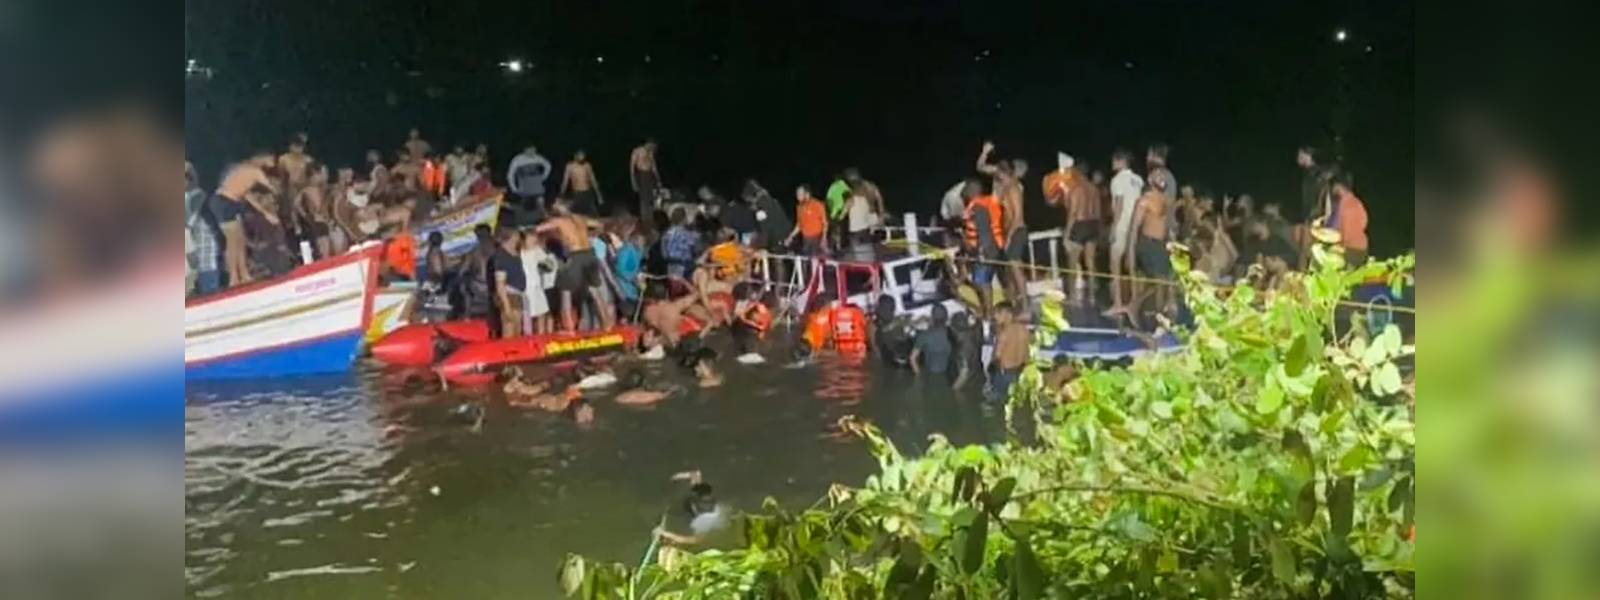 Boat capsizes in Kerala killing 22